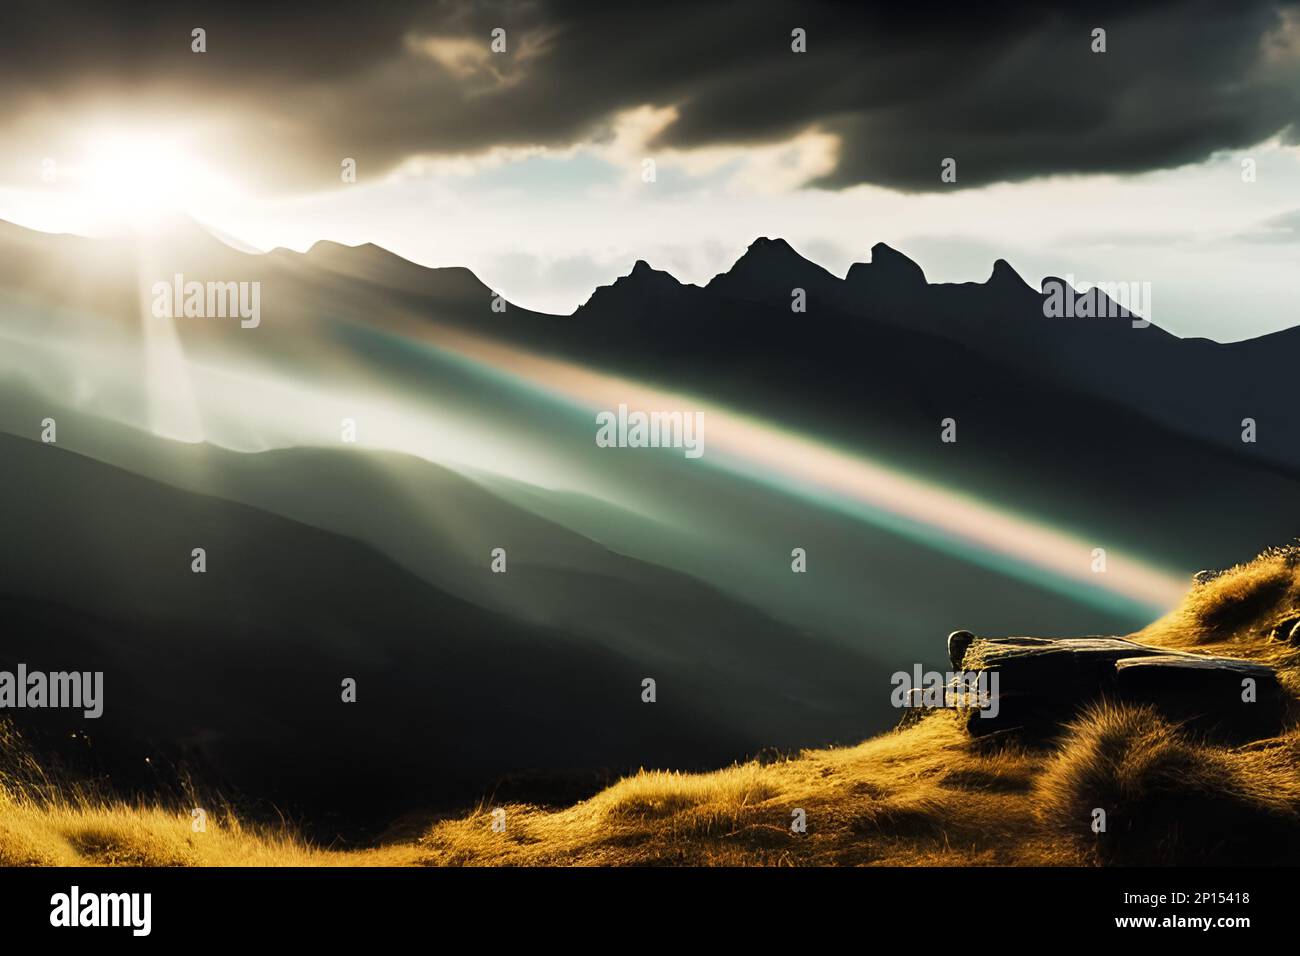 Sunrise or sunset over mountain range. Edited AI generated image Stock Photo